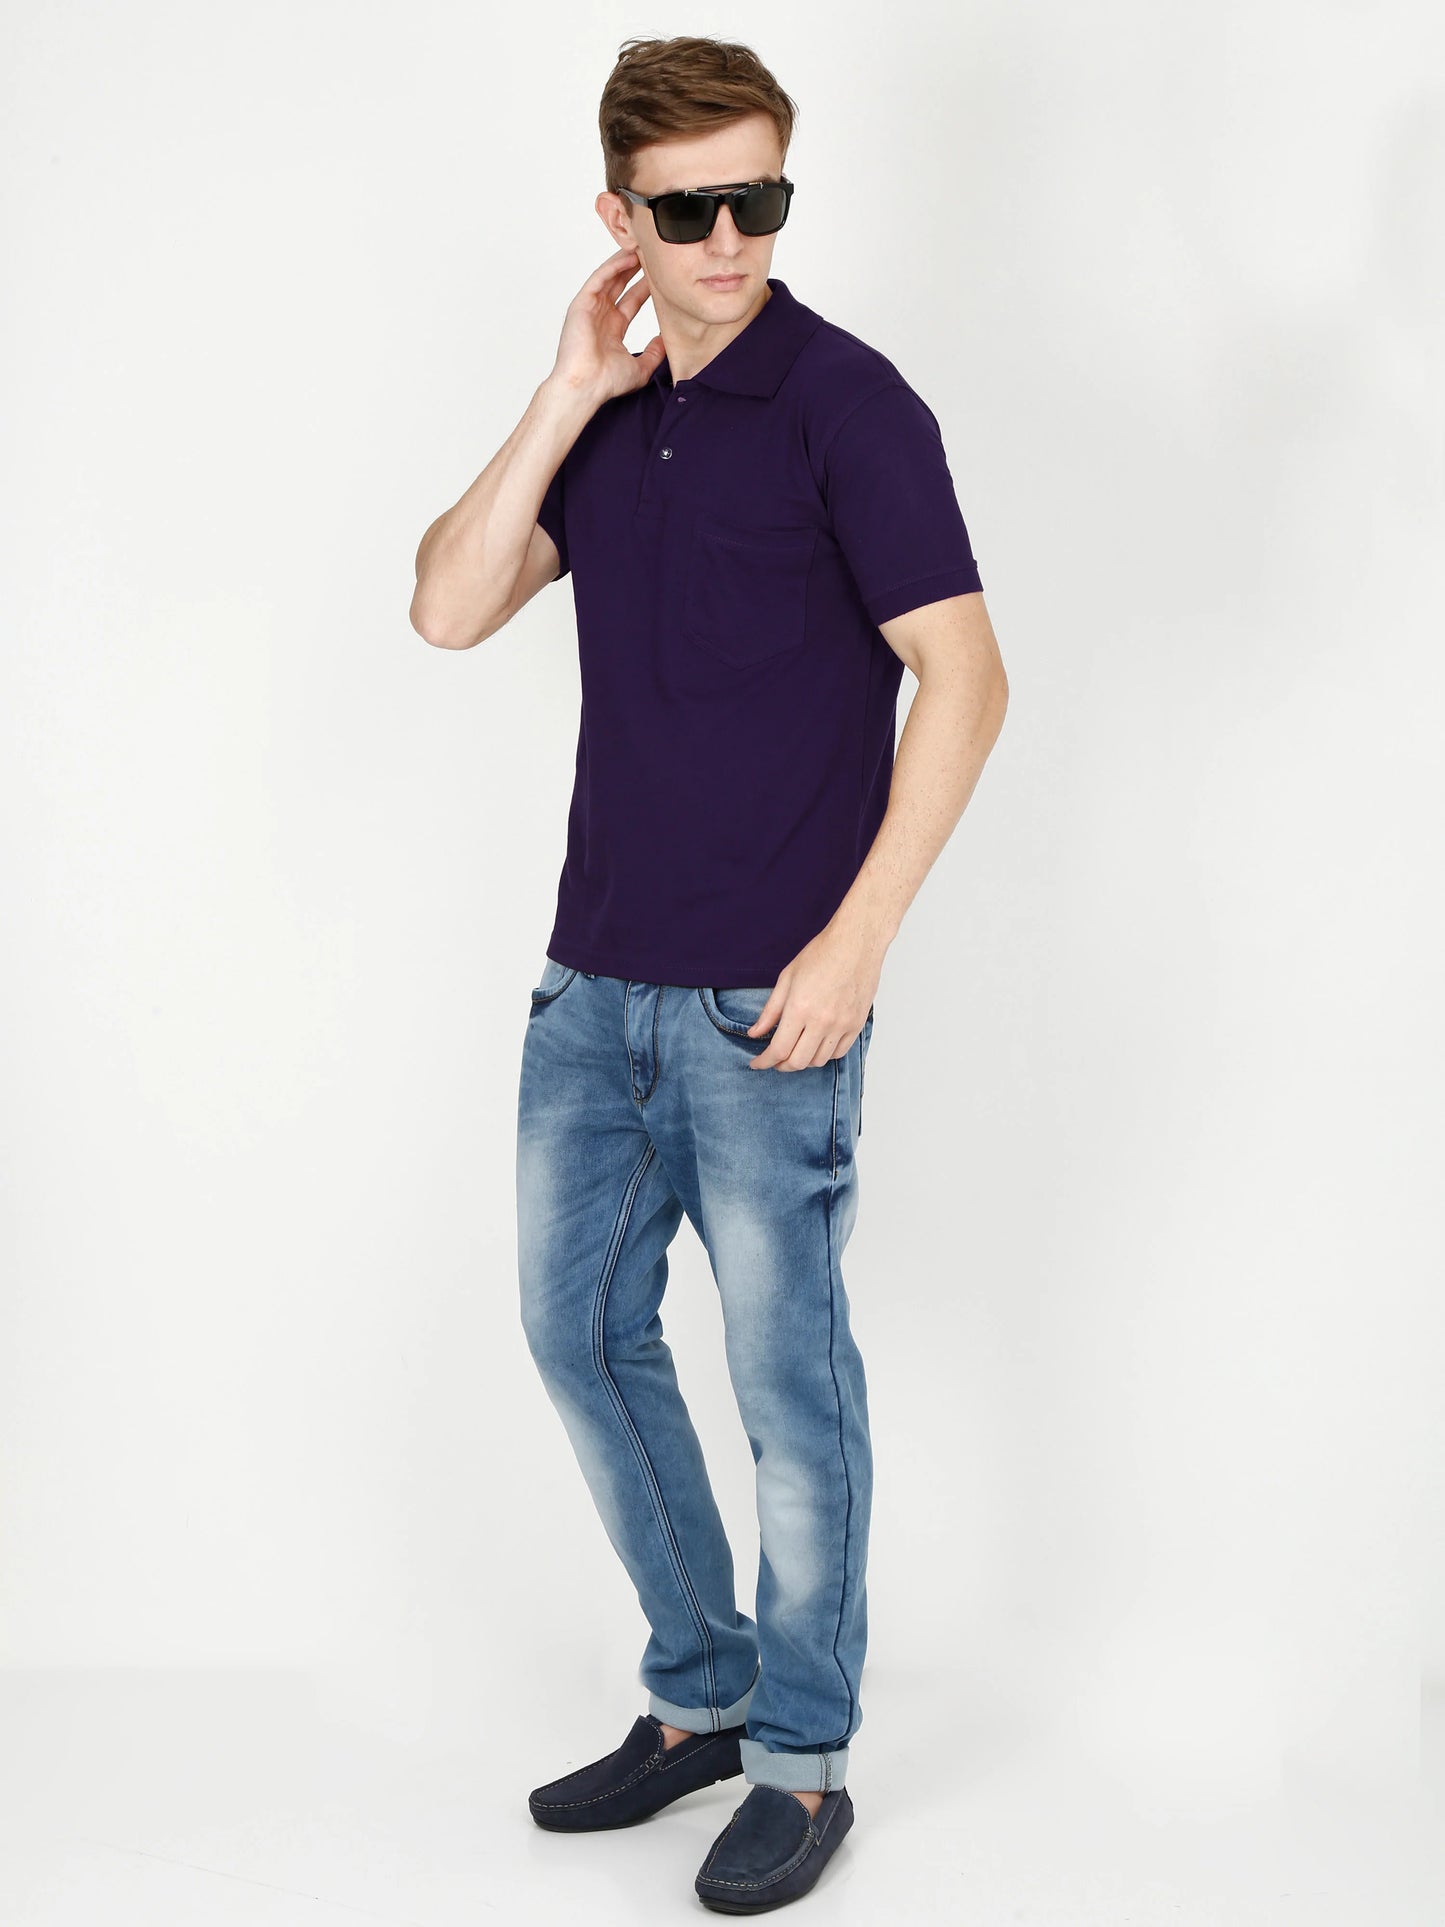 Men's Cotton Plain Polo Neck Half Sleeve Purple Color T-Shirt